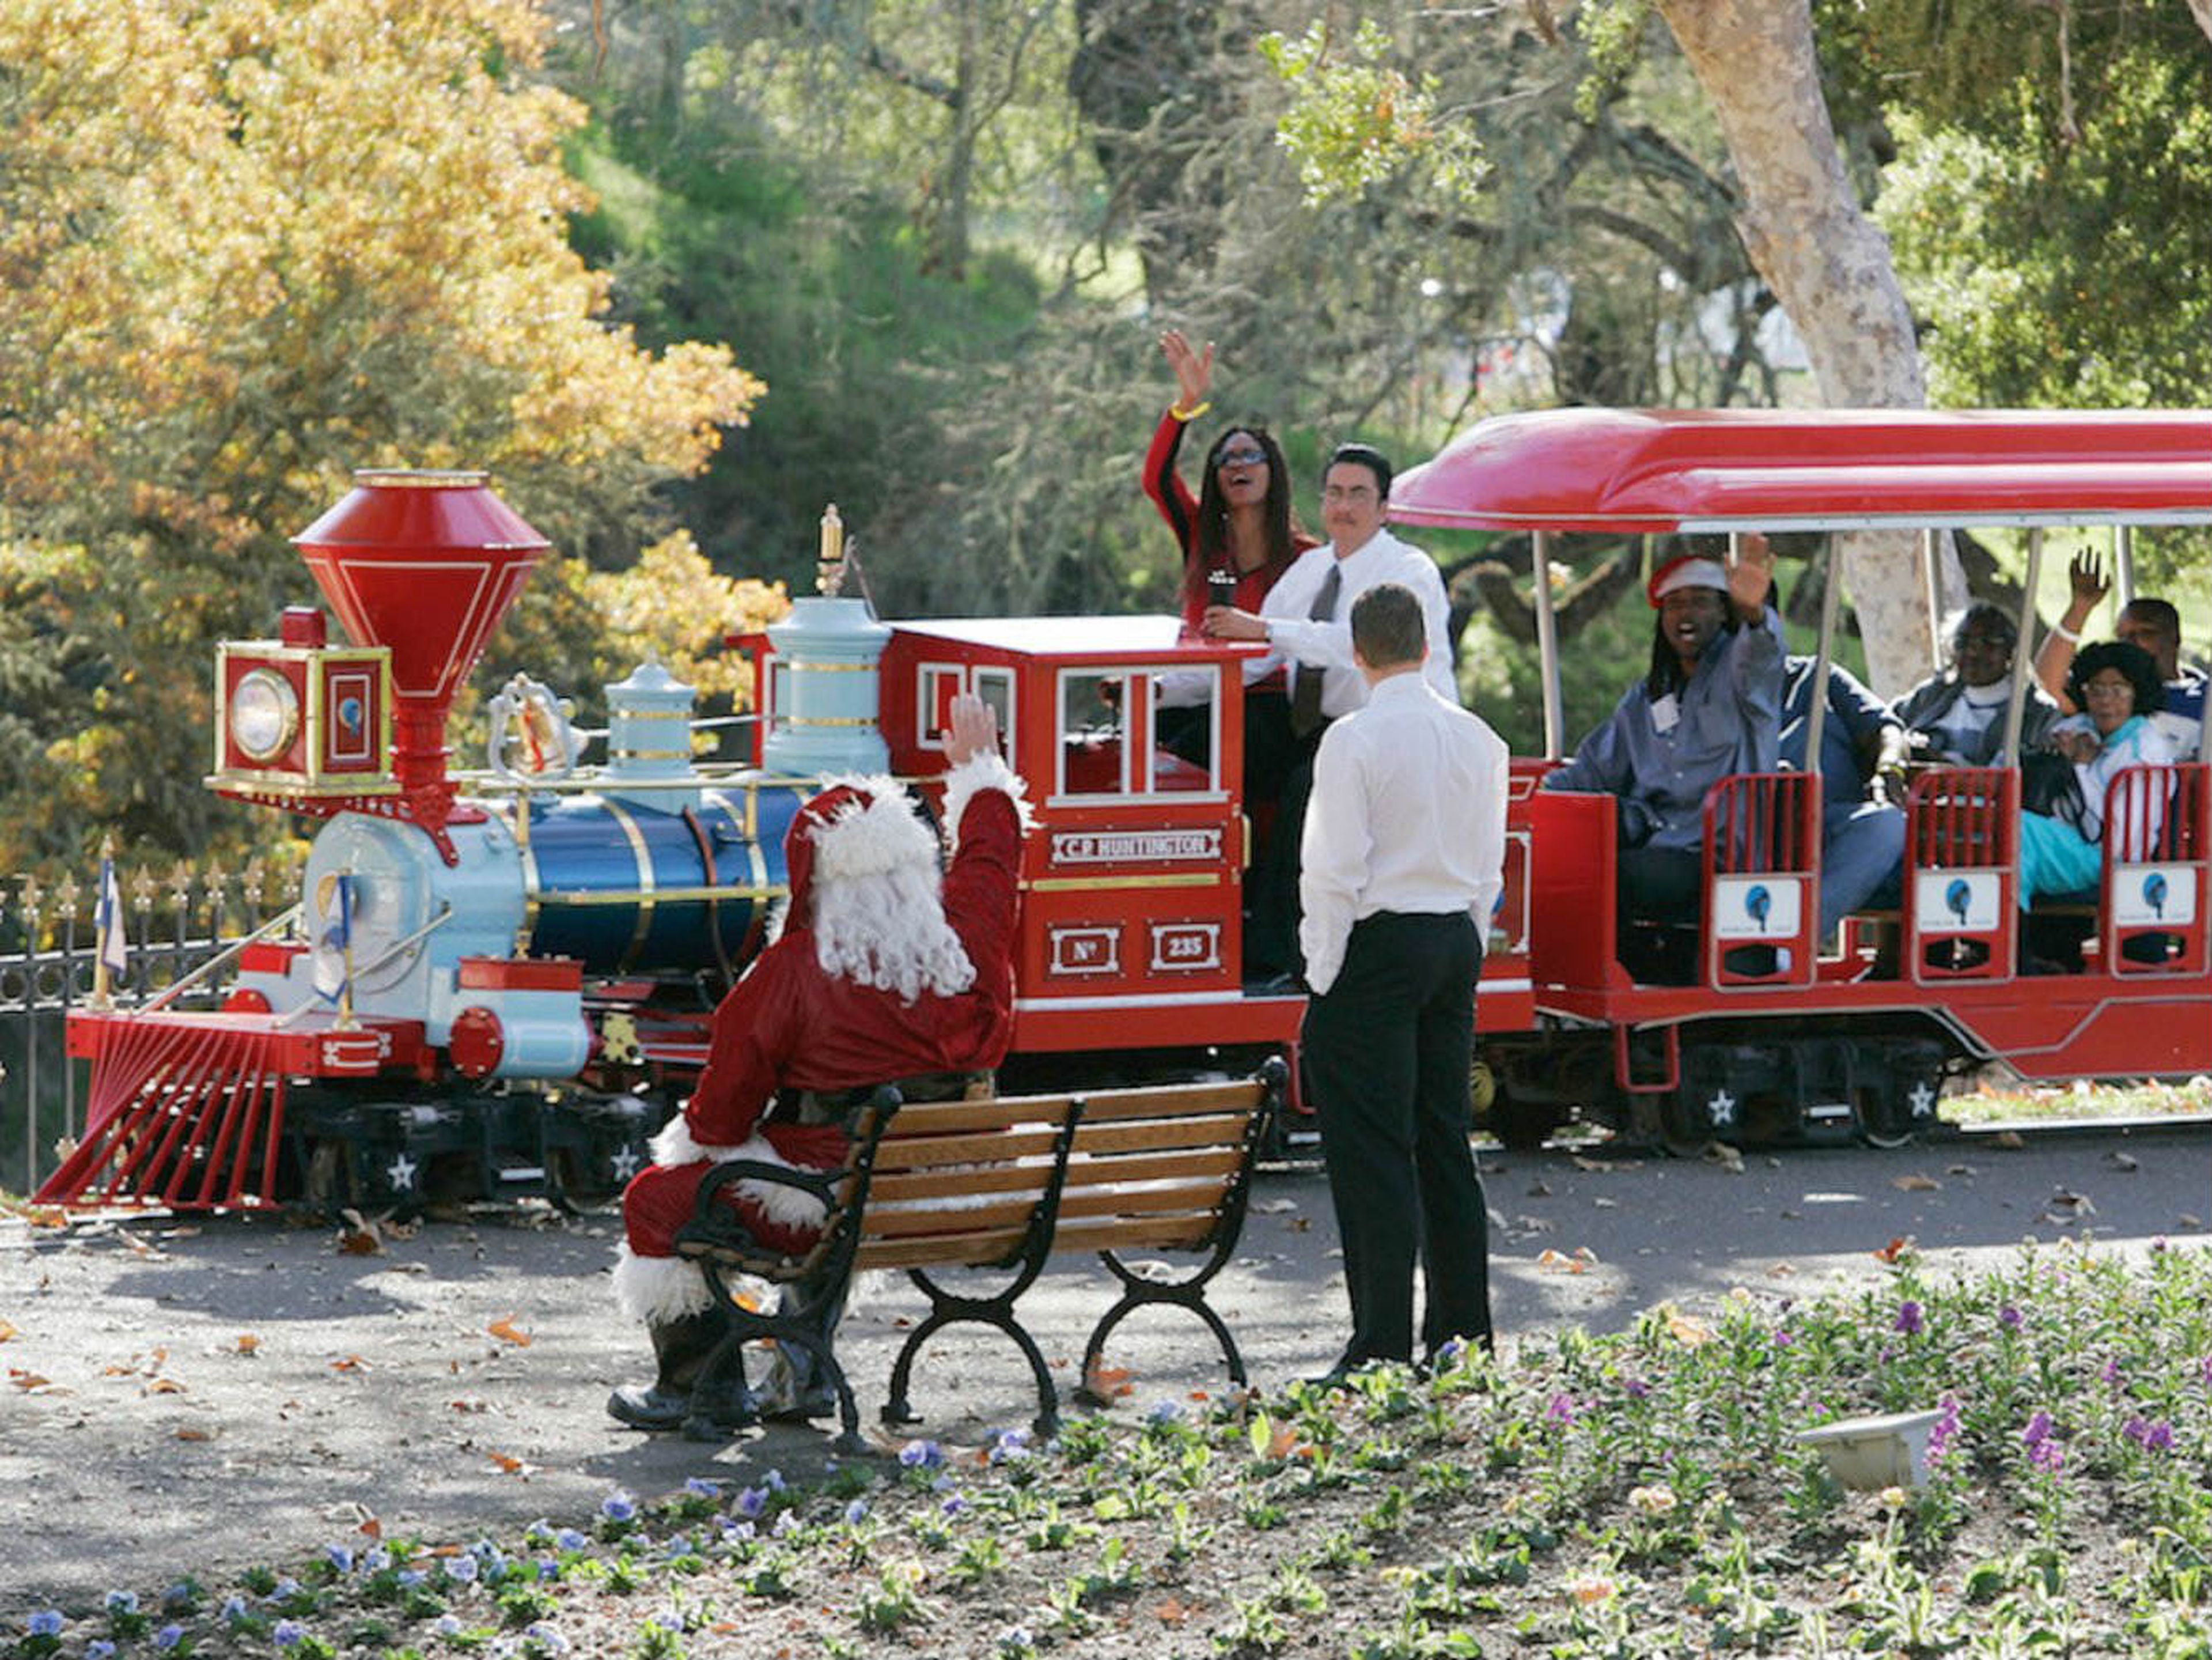 A los niños y adultos les encantaba usar el tren cuando Jackson organizaba fiestas, como esta celebración navideña en 2004